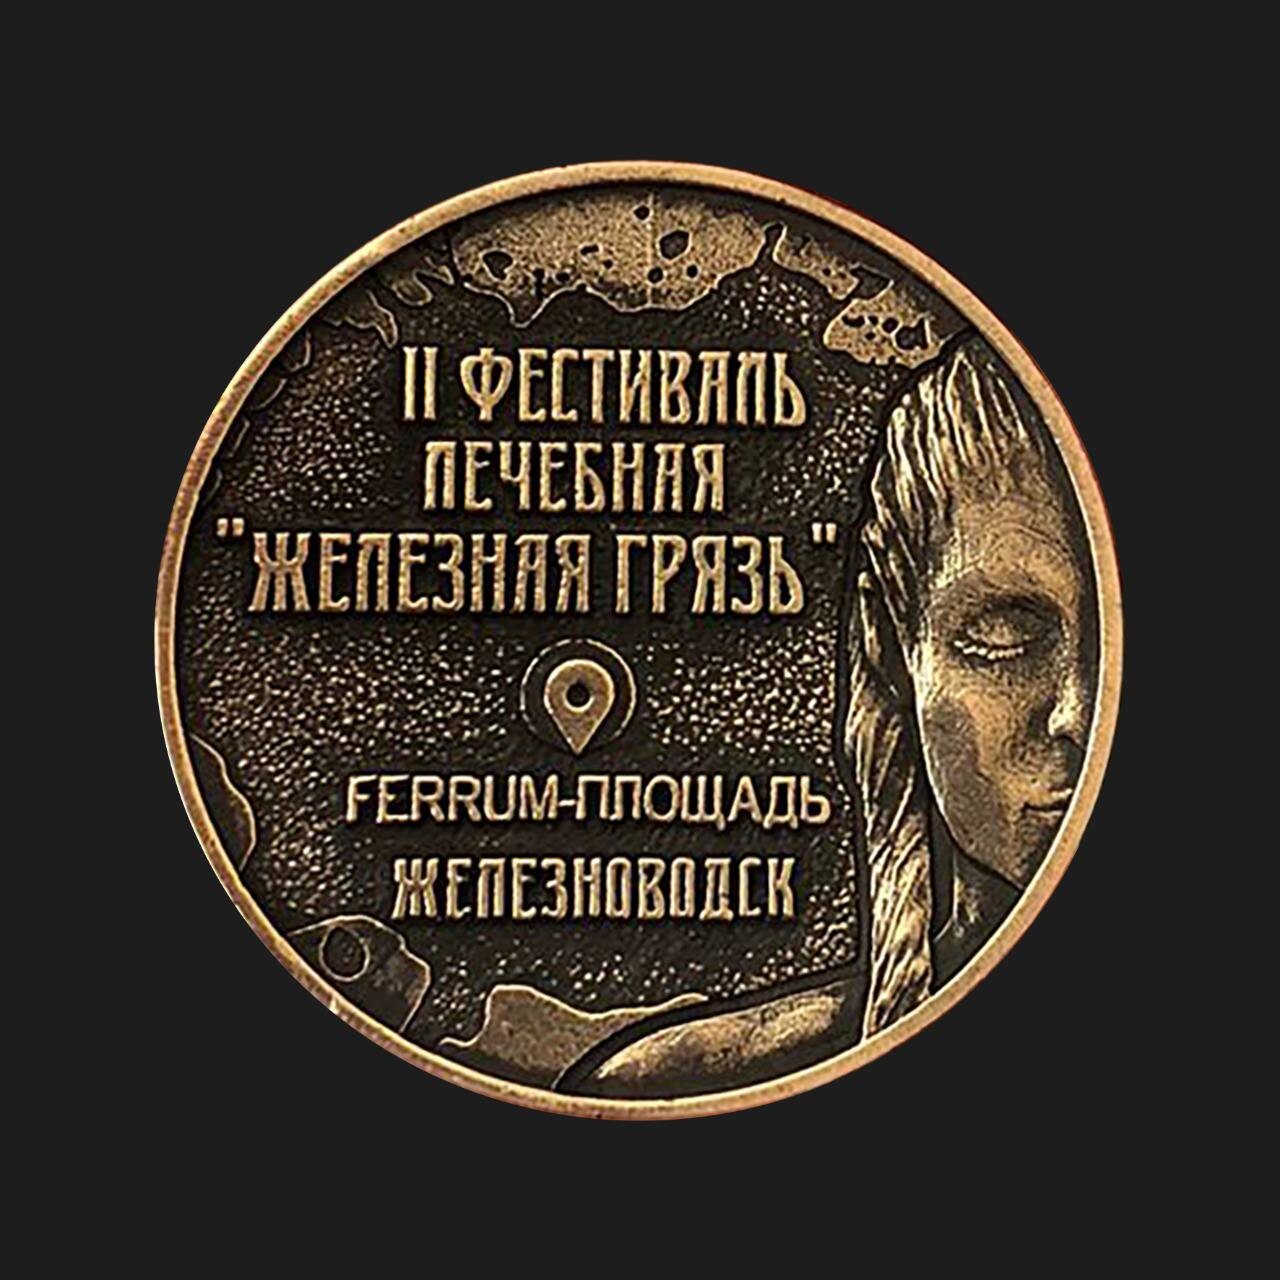 Участникам фестиваля "Железная грязь" в Железноводске предложил отмыть монеты